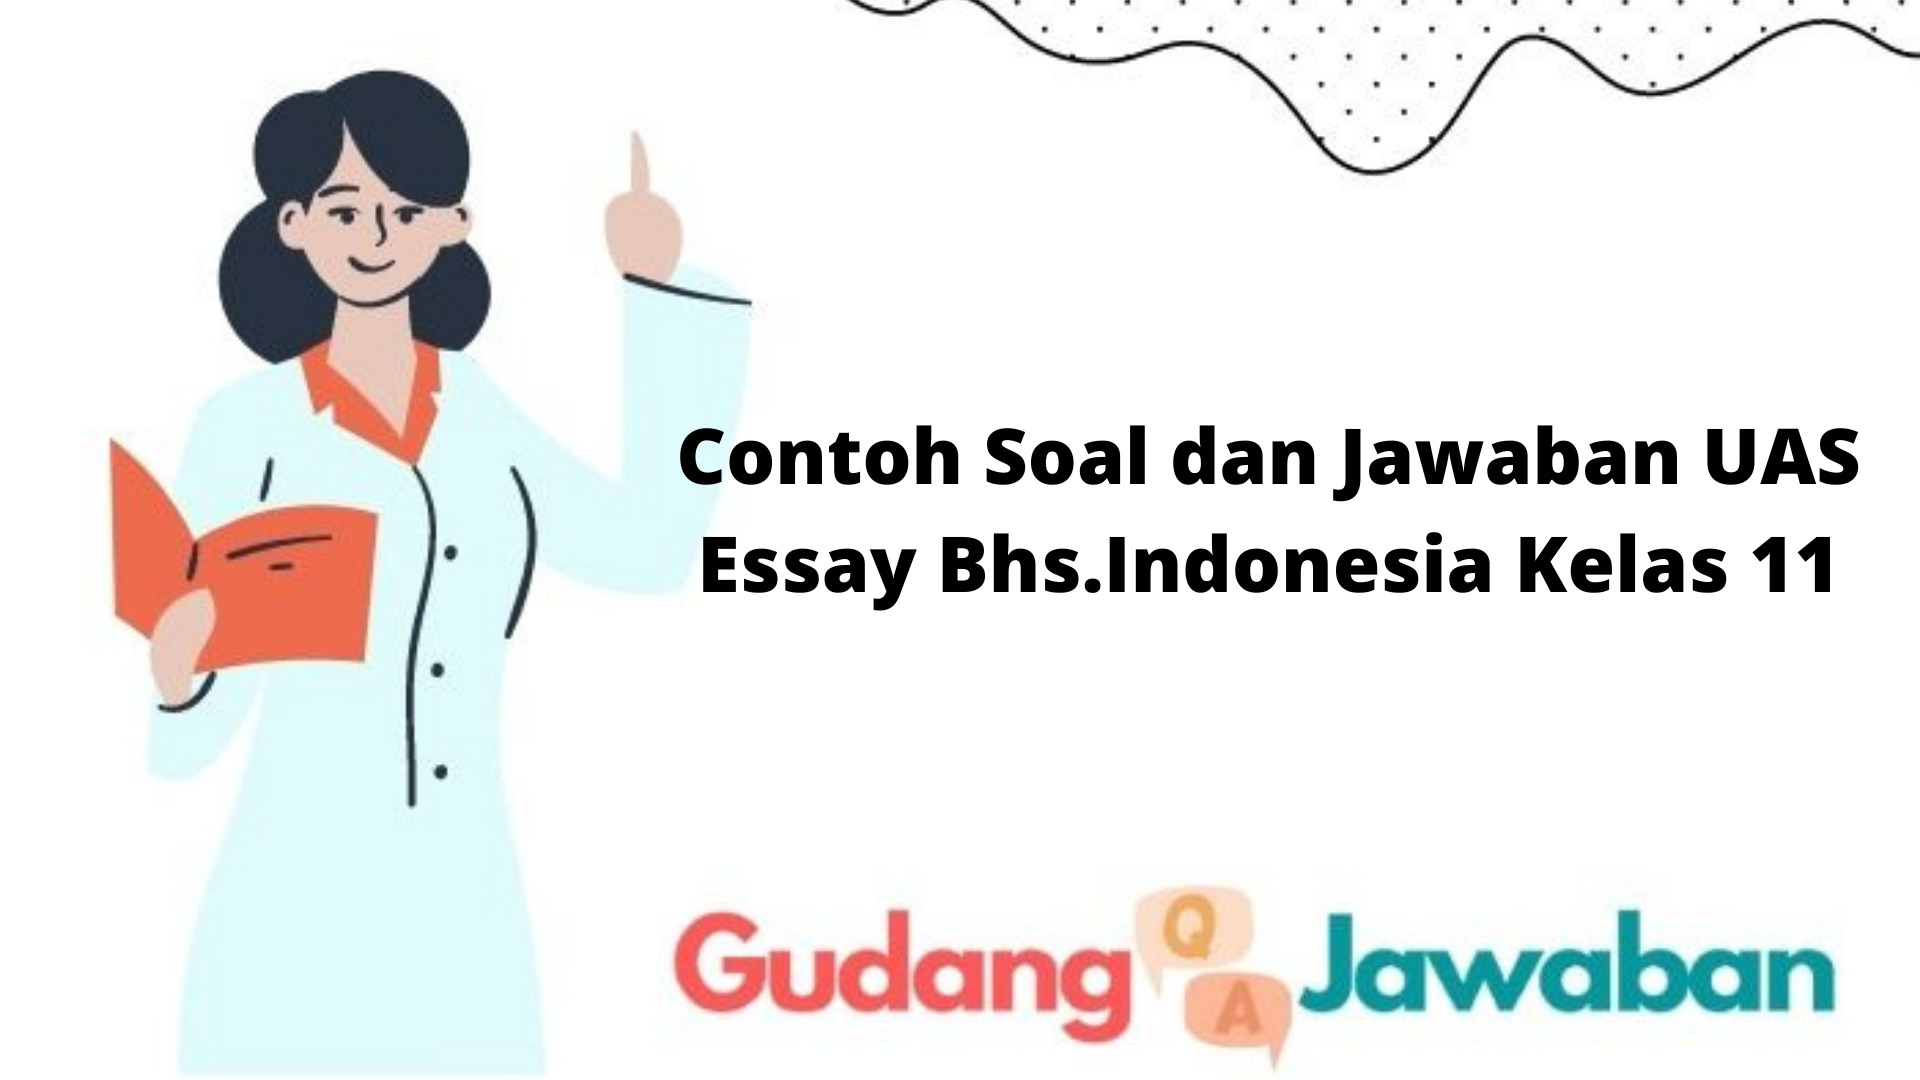 Contoh Soal dan Jawaban UAS Essay Bhs.Indonesia Kelas 11